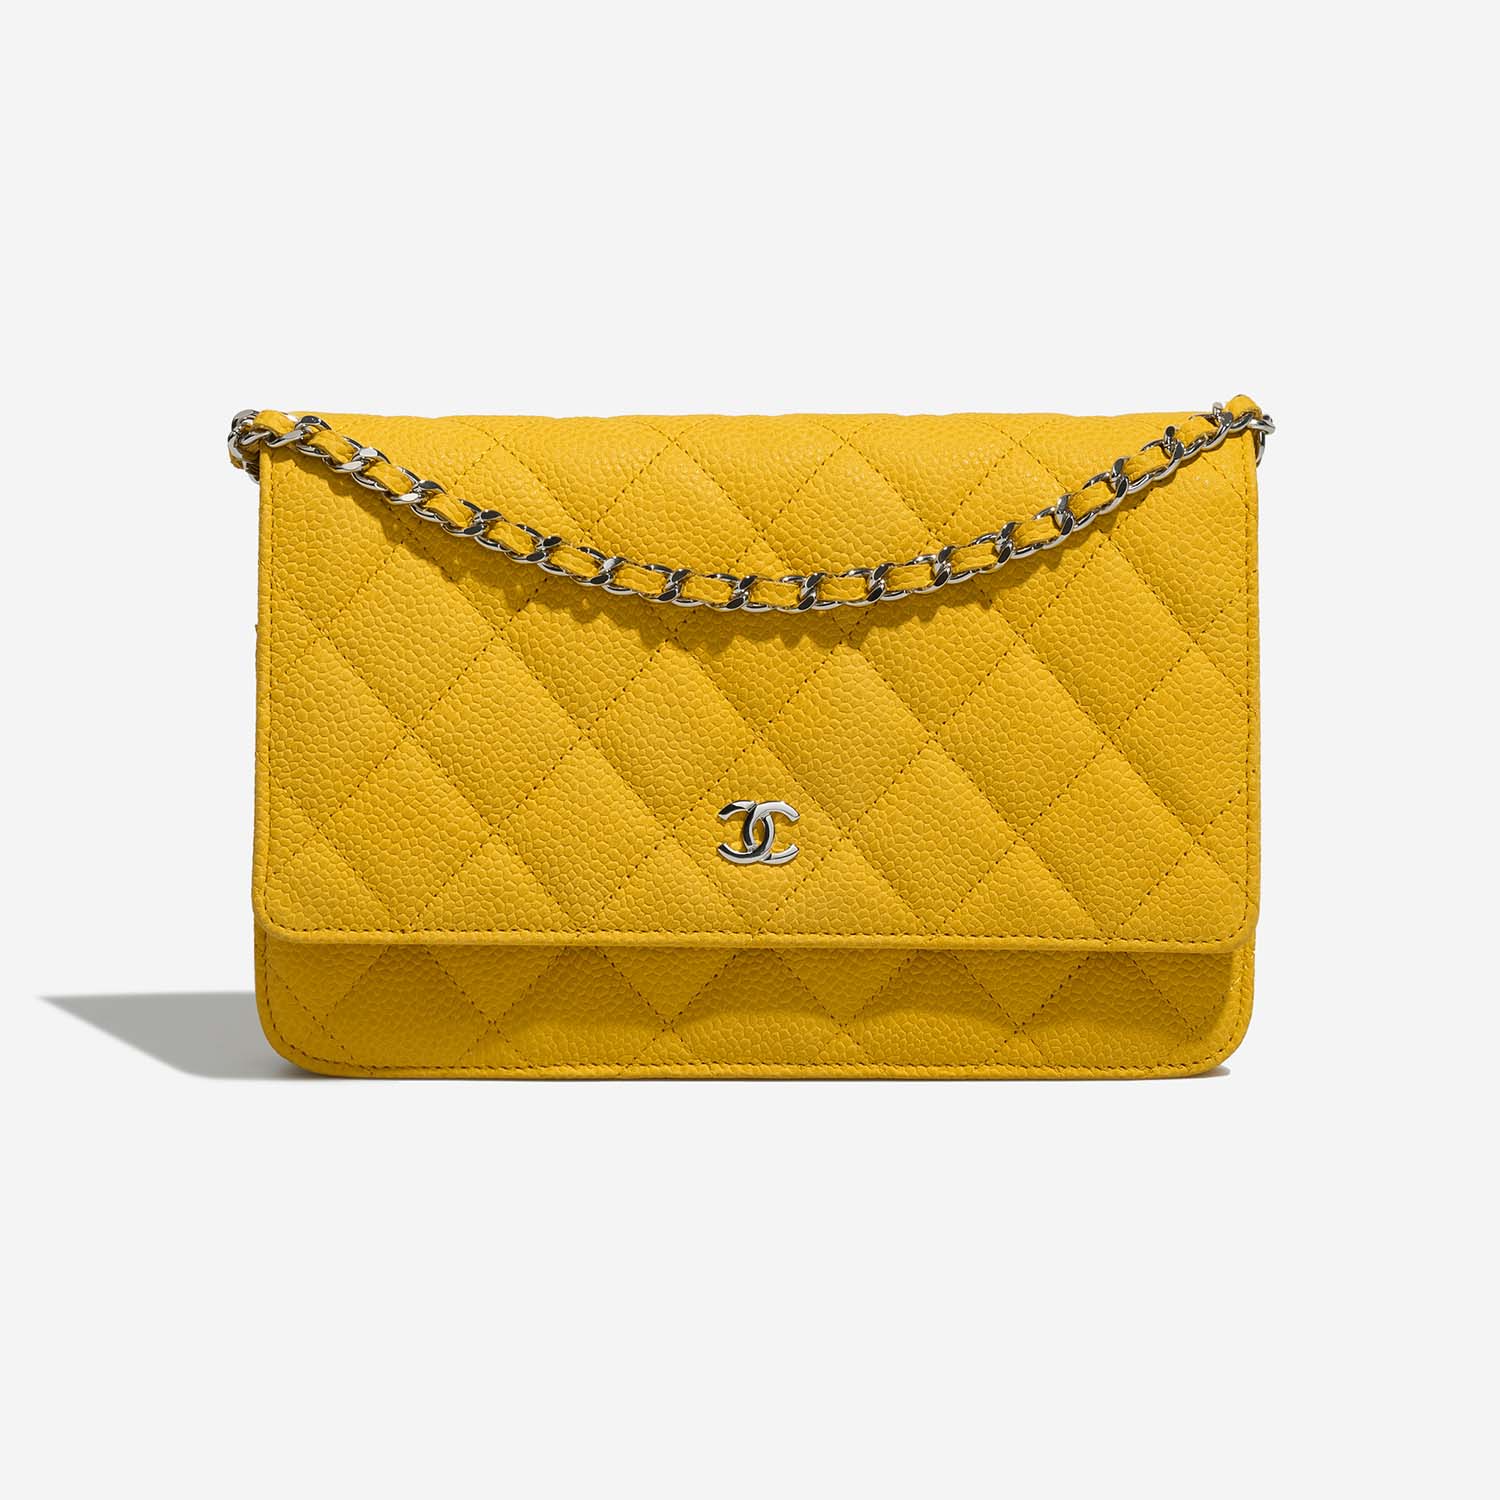 Chanel Timeless WOC Yellow Front | Verkaufen Sie Ihre Designer-Tasche auf Saclab.com